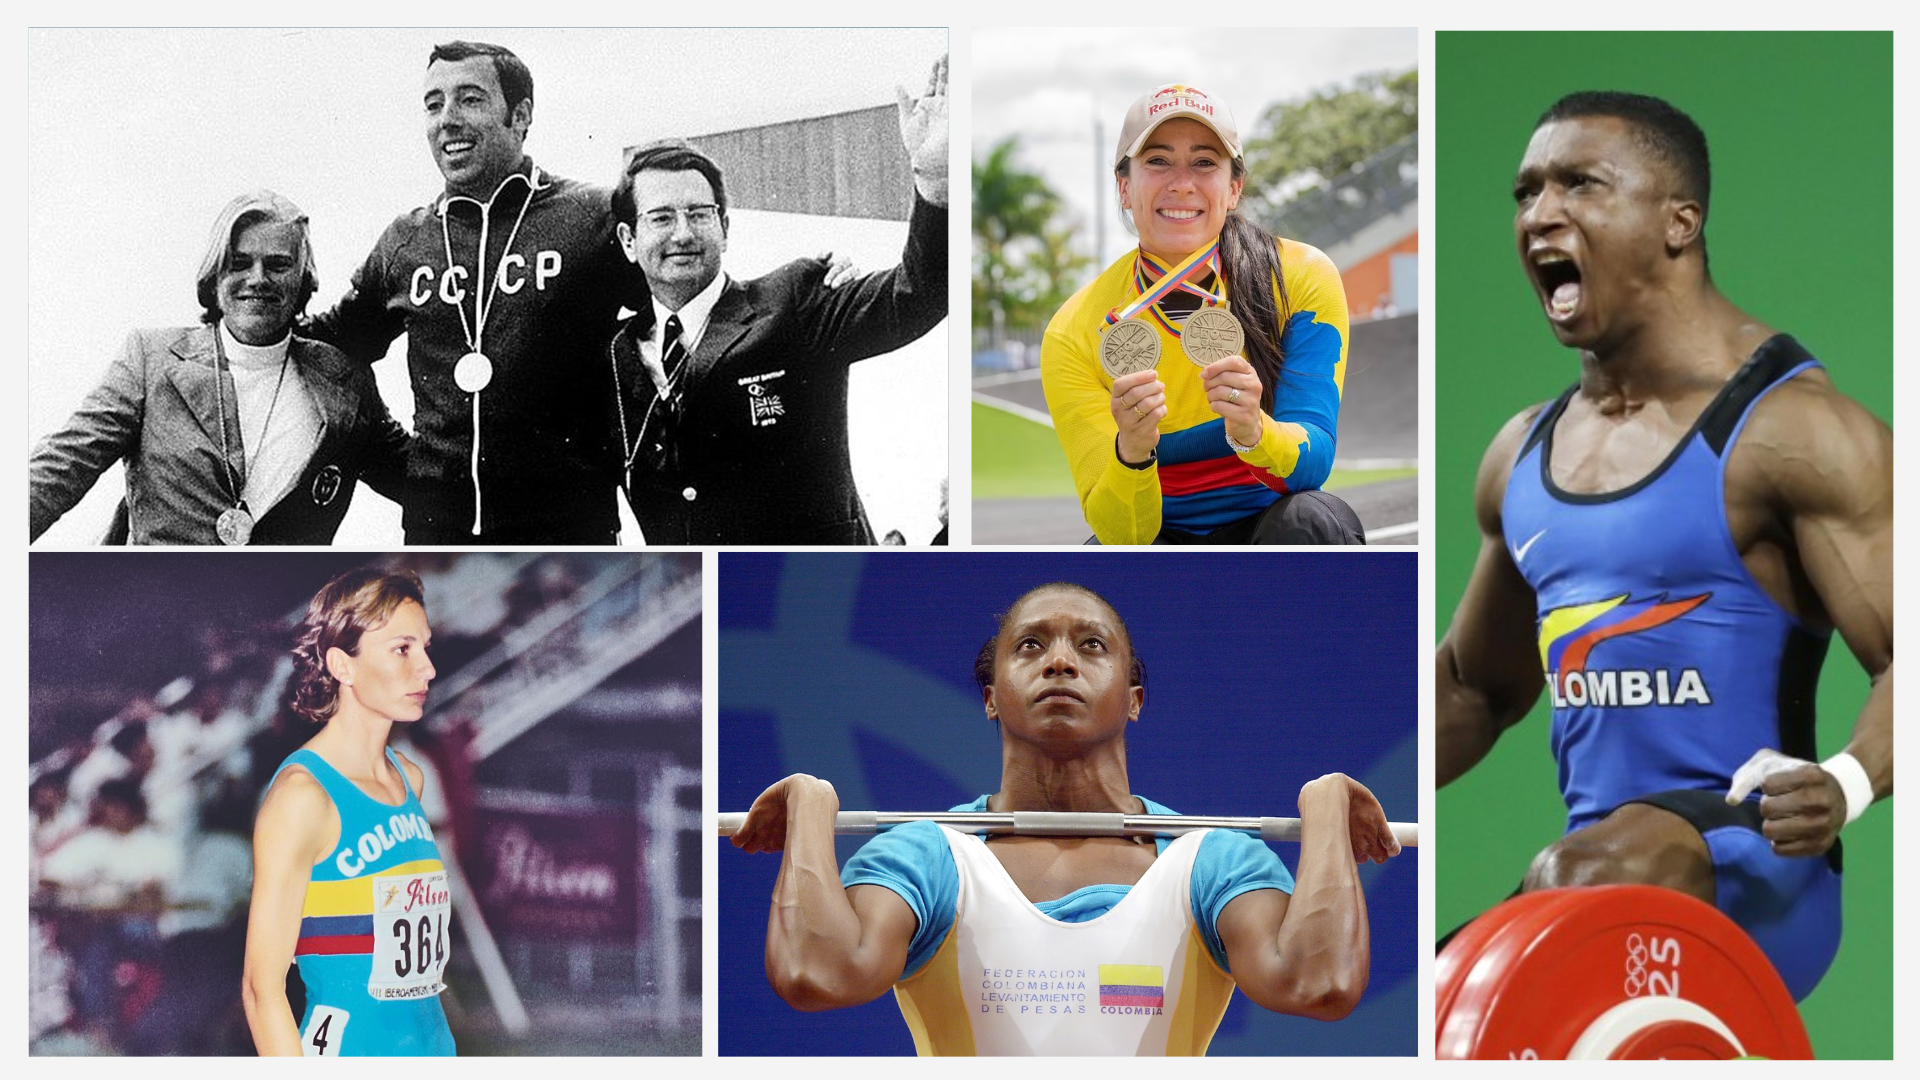 La Historia de Colombia en los Juegos Olímpicos